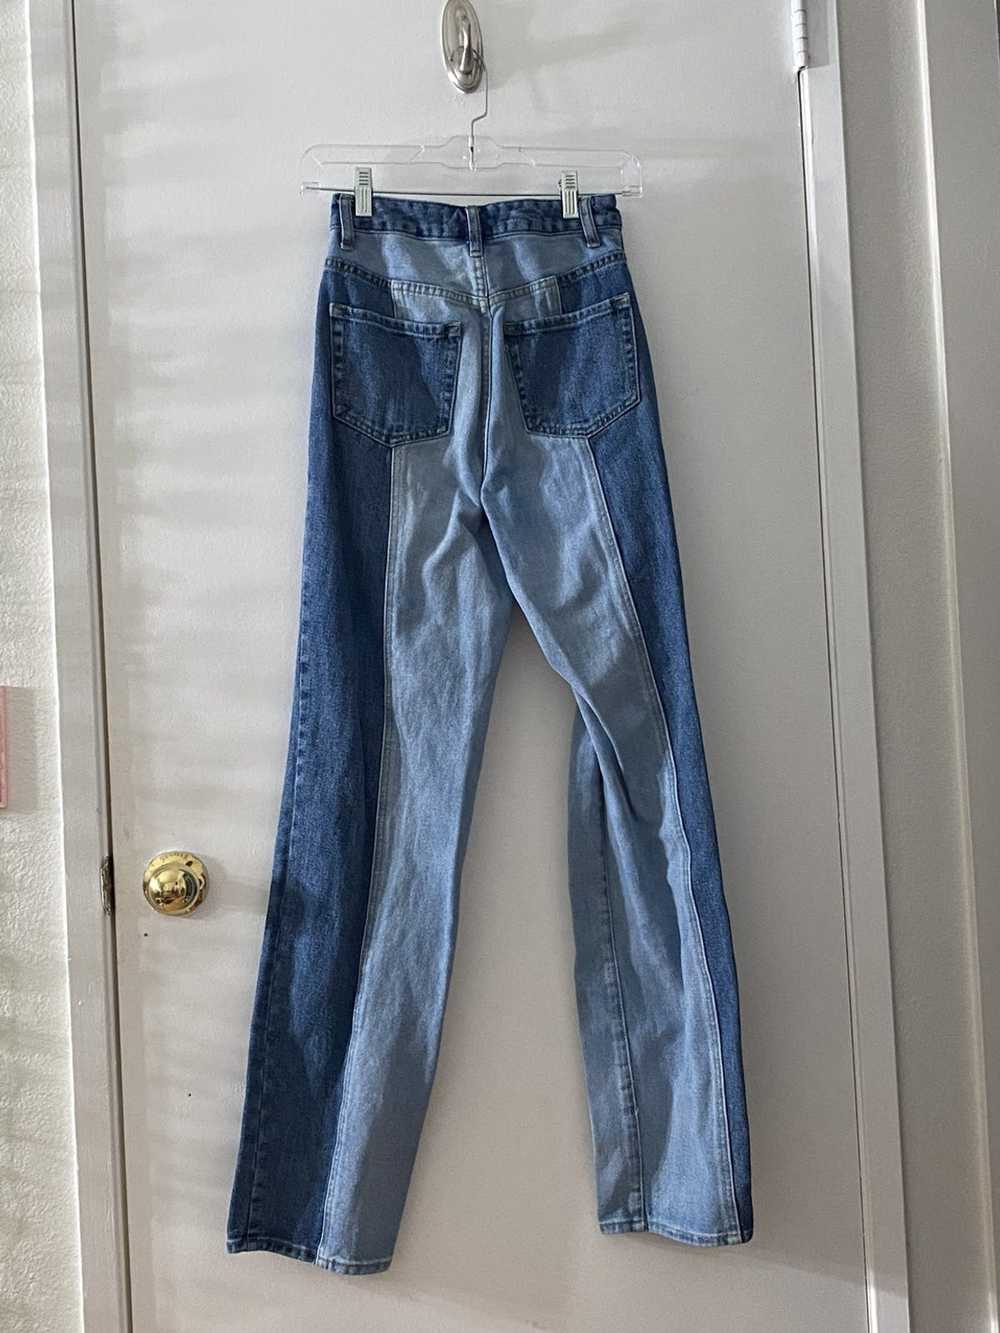 Pacsun 90’s Boyfriend Jeans - image 2